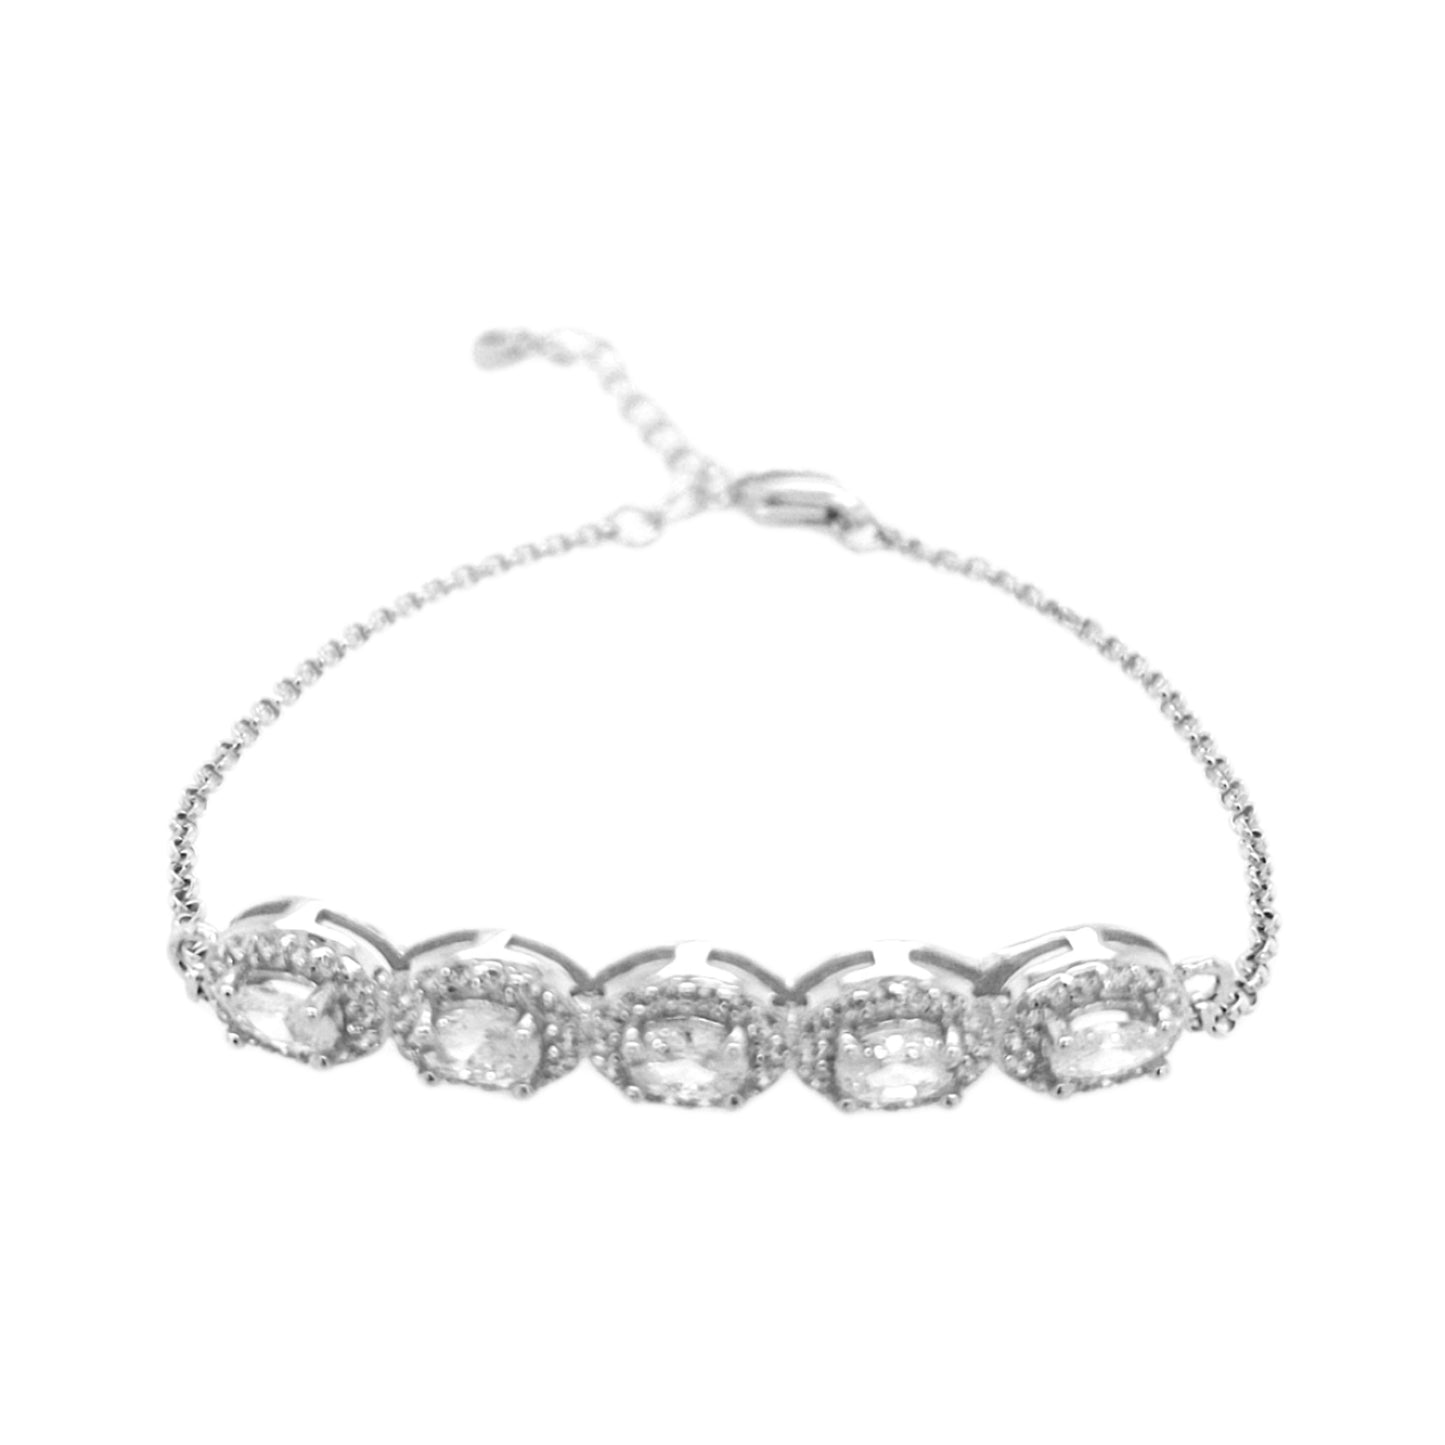 Sterling Silver Oval Halo CZ Bar Bracelet - HK Jewels